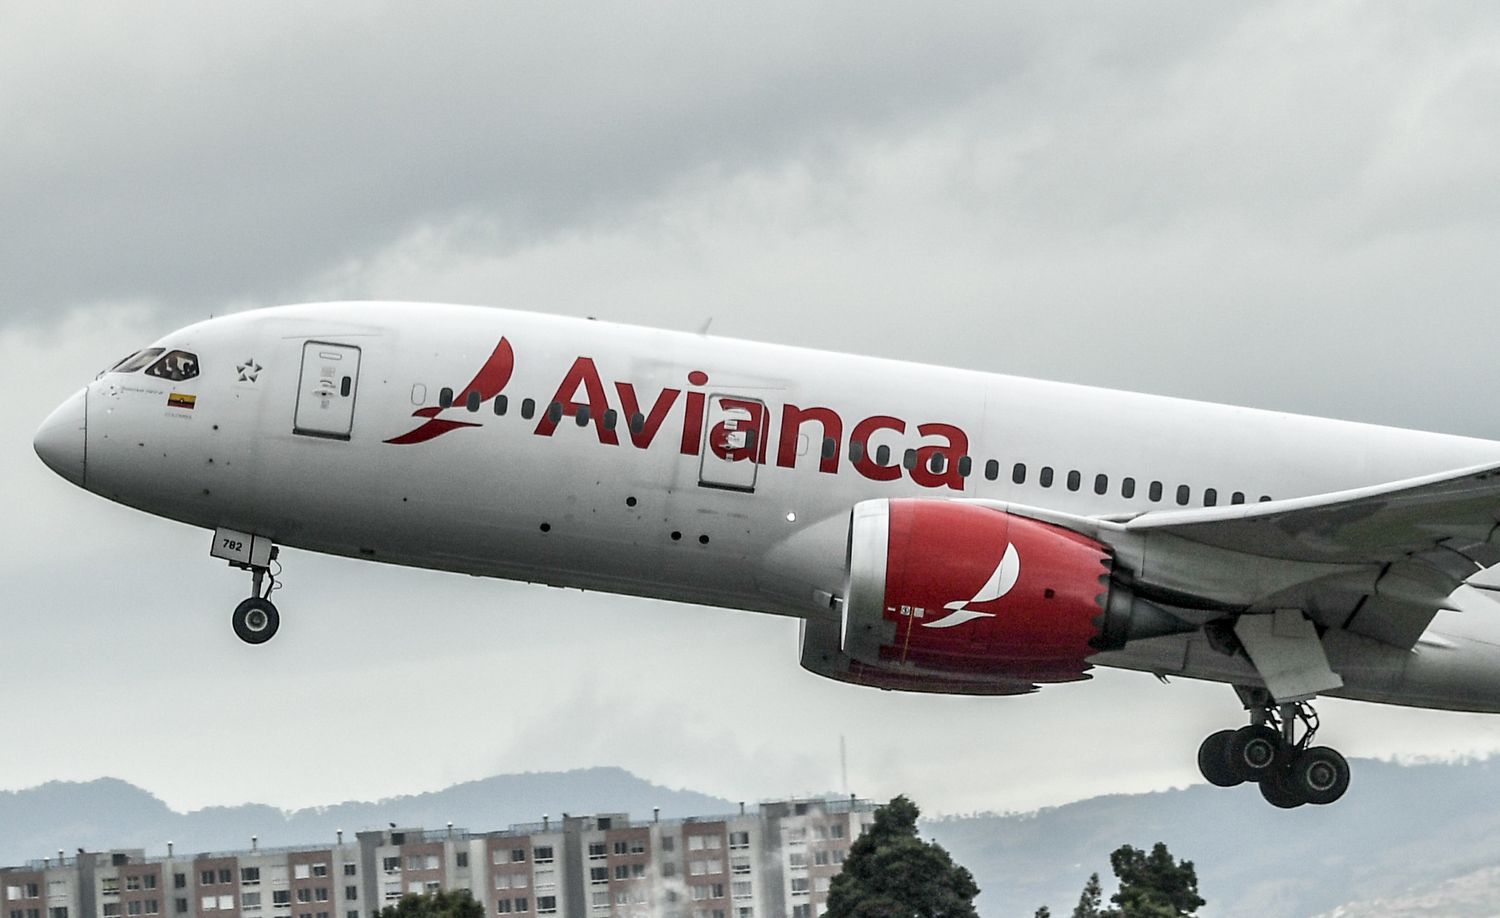 Aerolínea 'Avianca' de Colombia queda en bancarrota por impacto económico de Covid-19